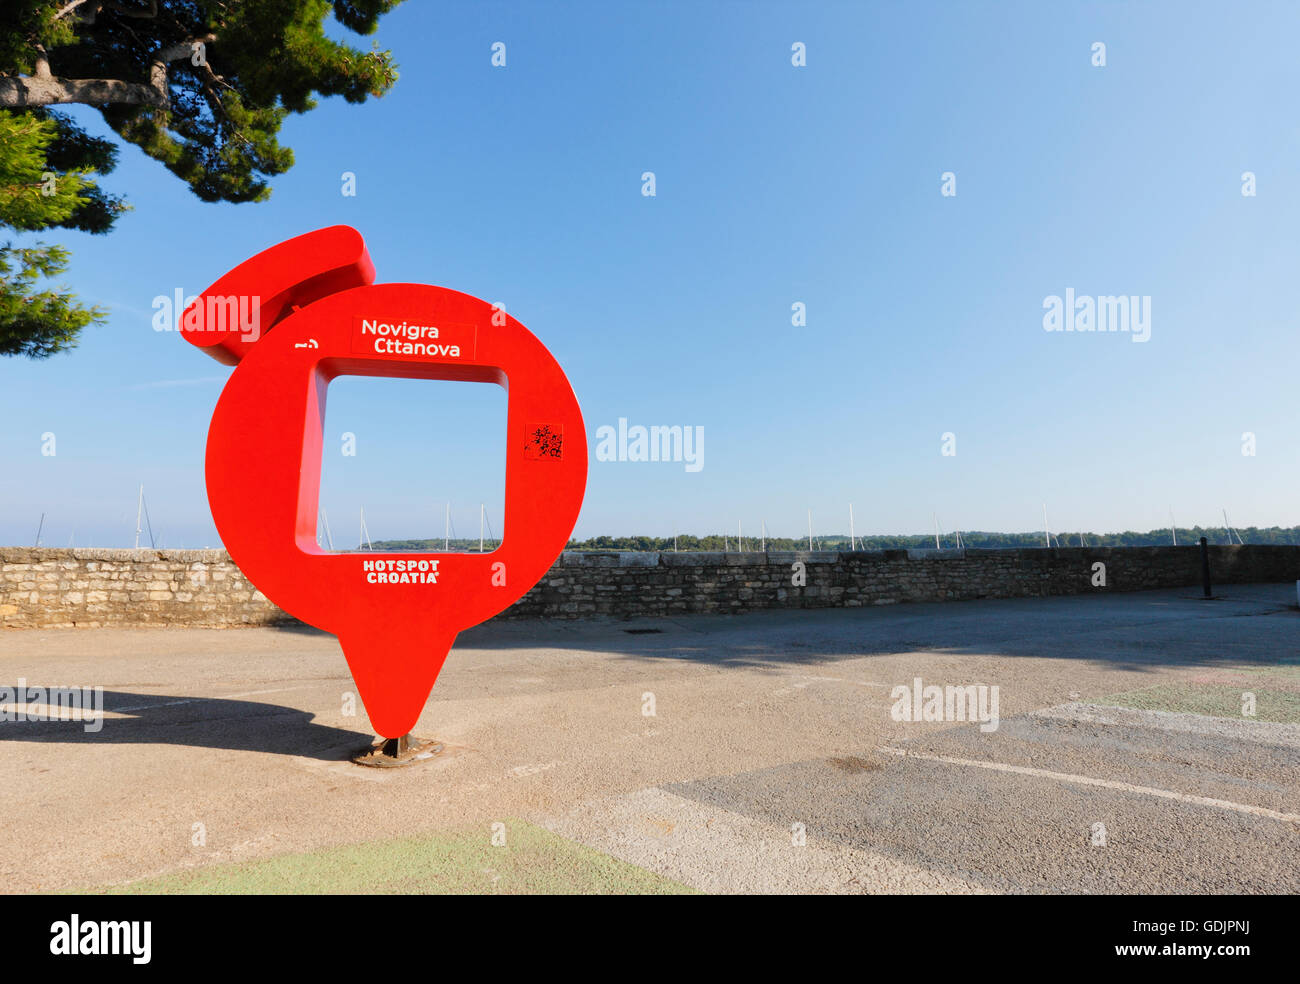 En Novigrad, punto hotspot wifi gratis en la ciudad Foto de stock